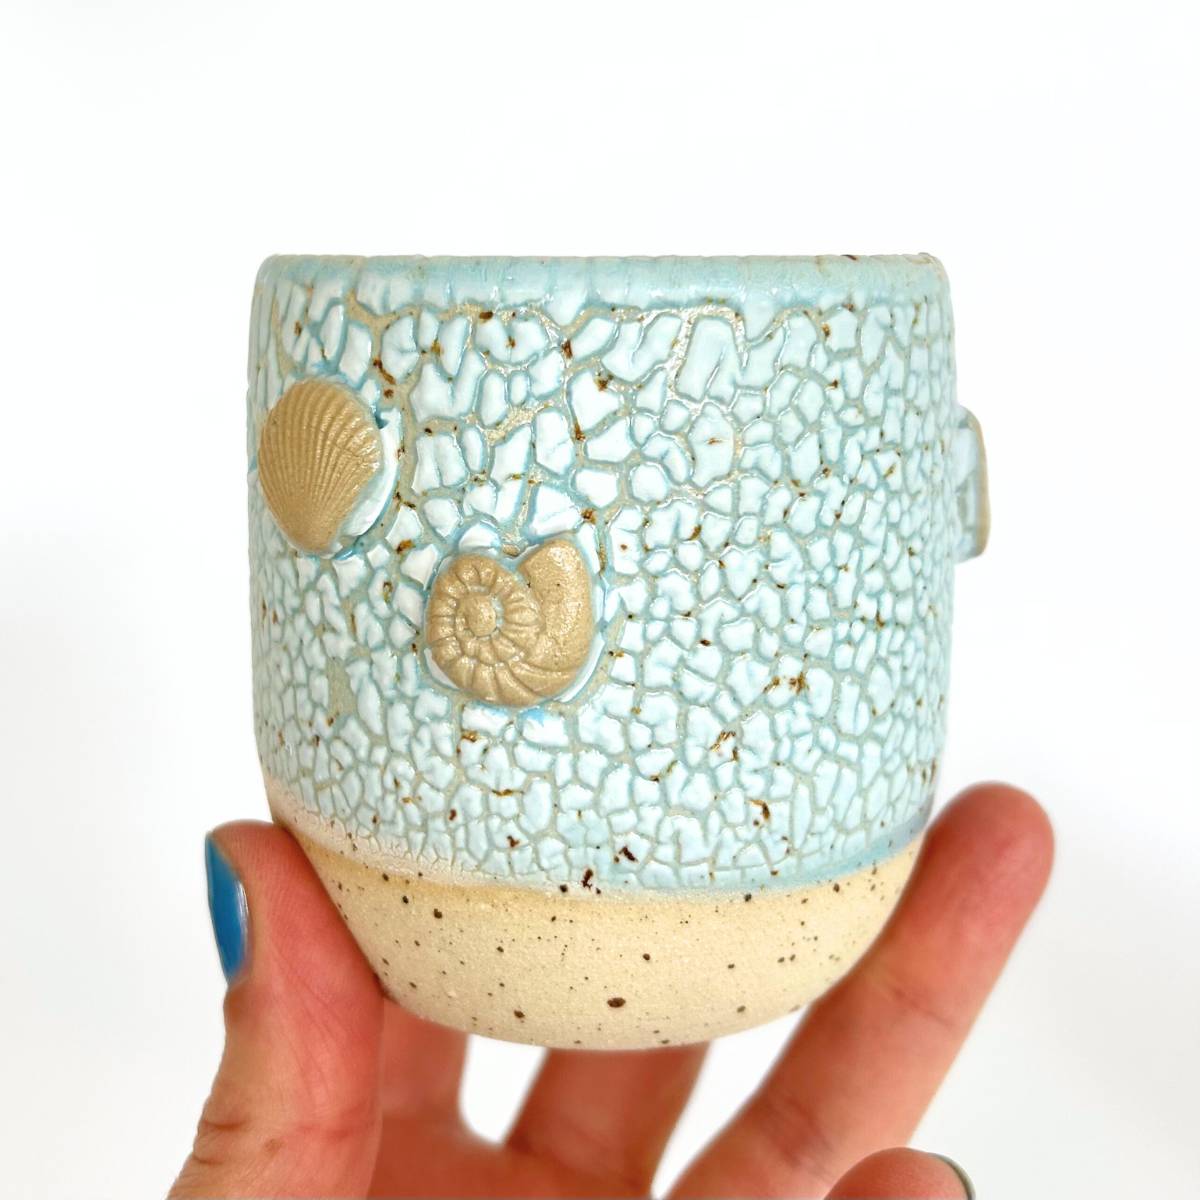 håndlavet keramik i Seashell serien